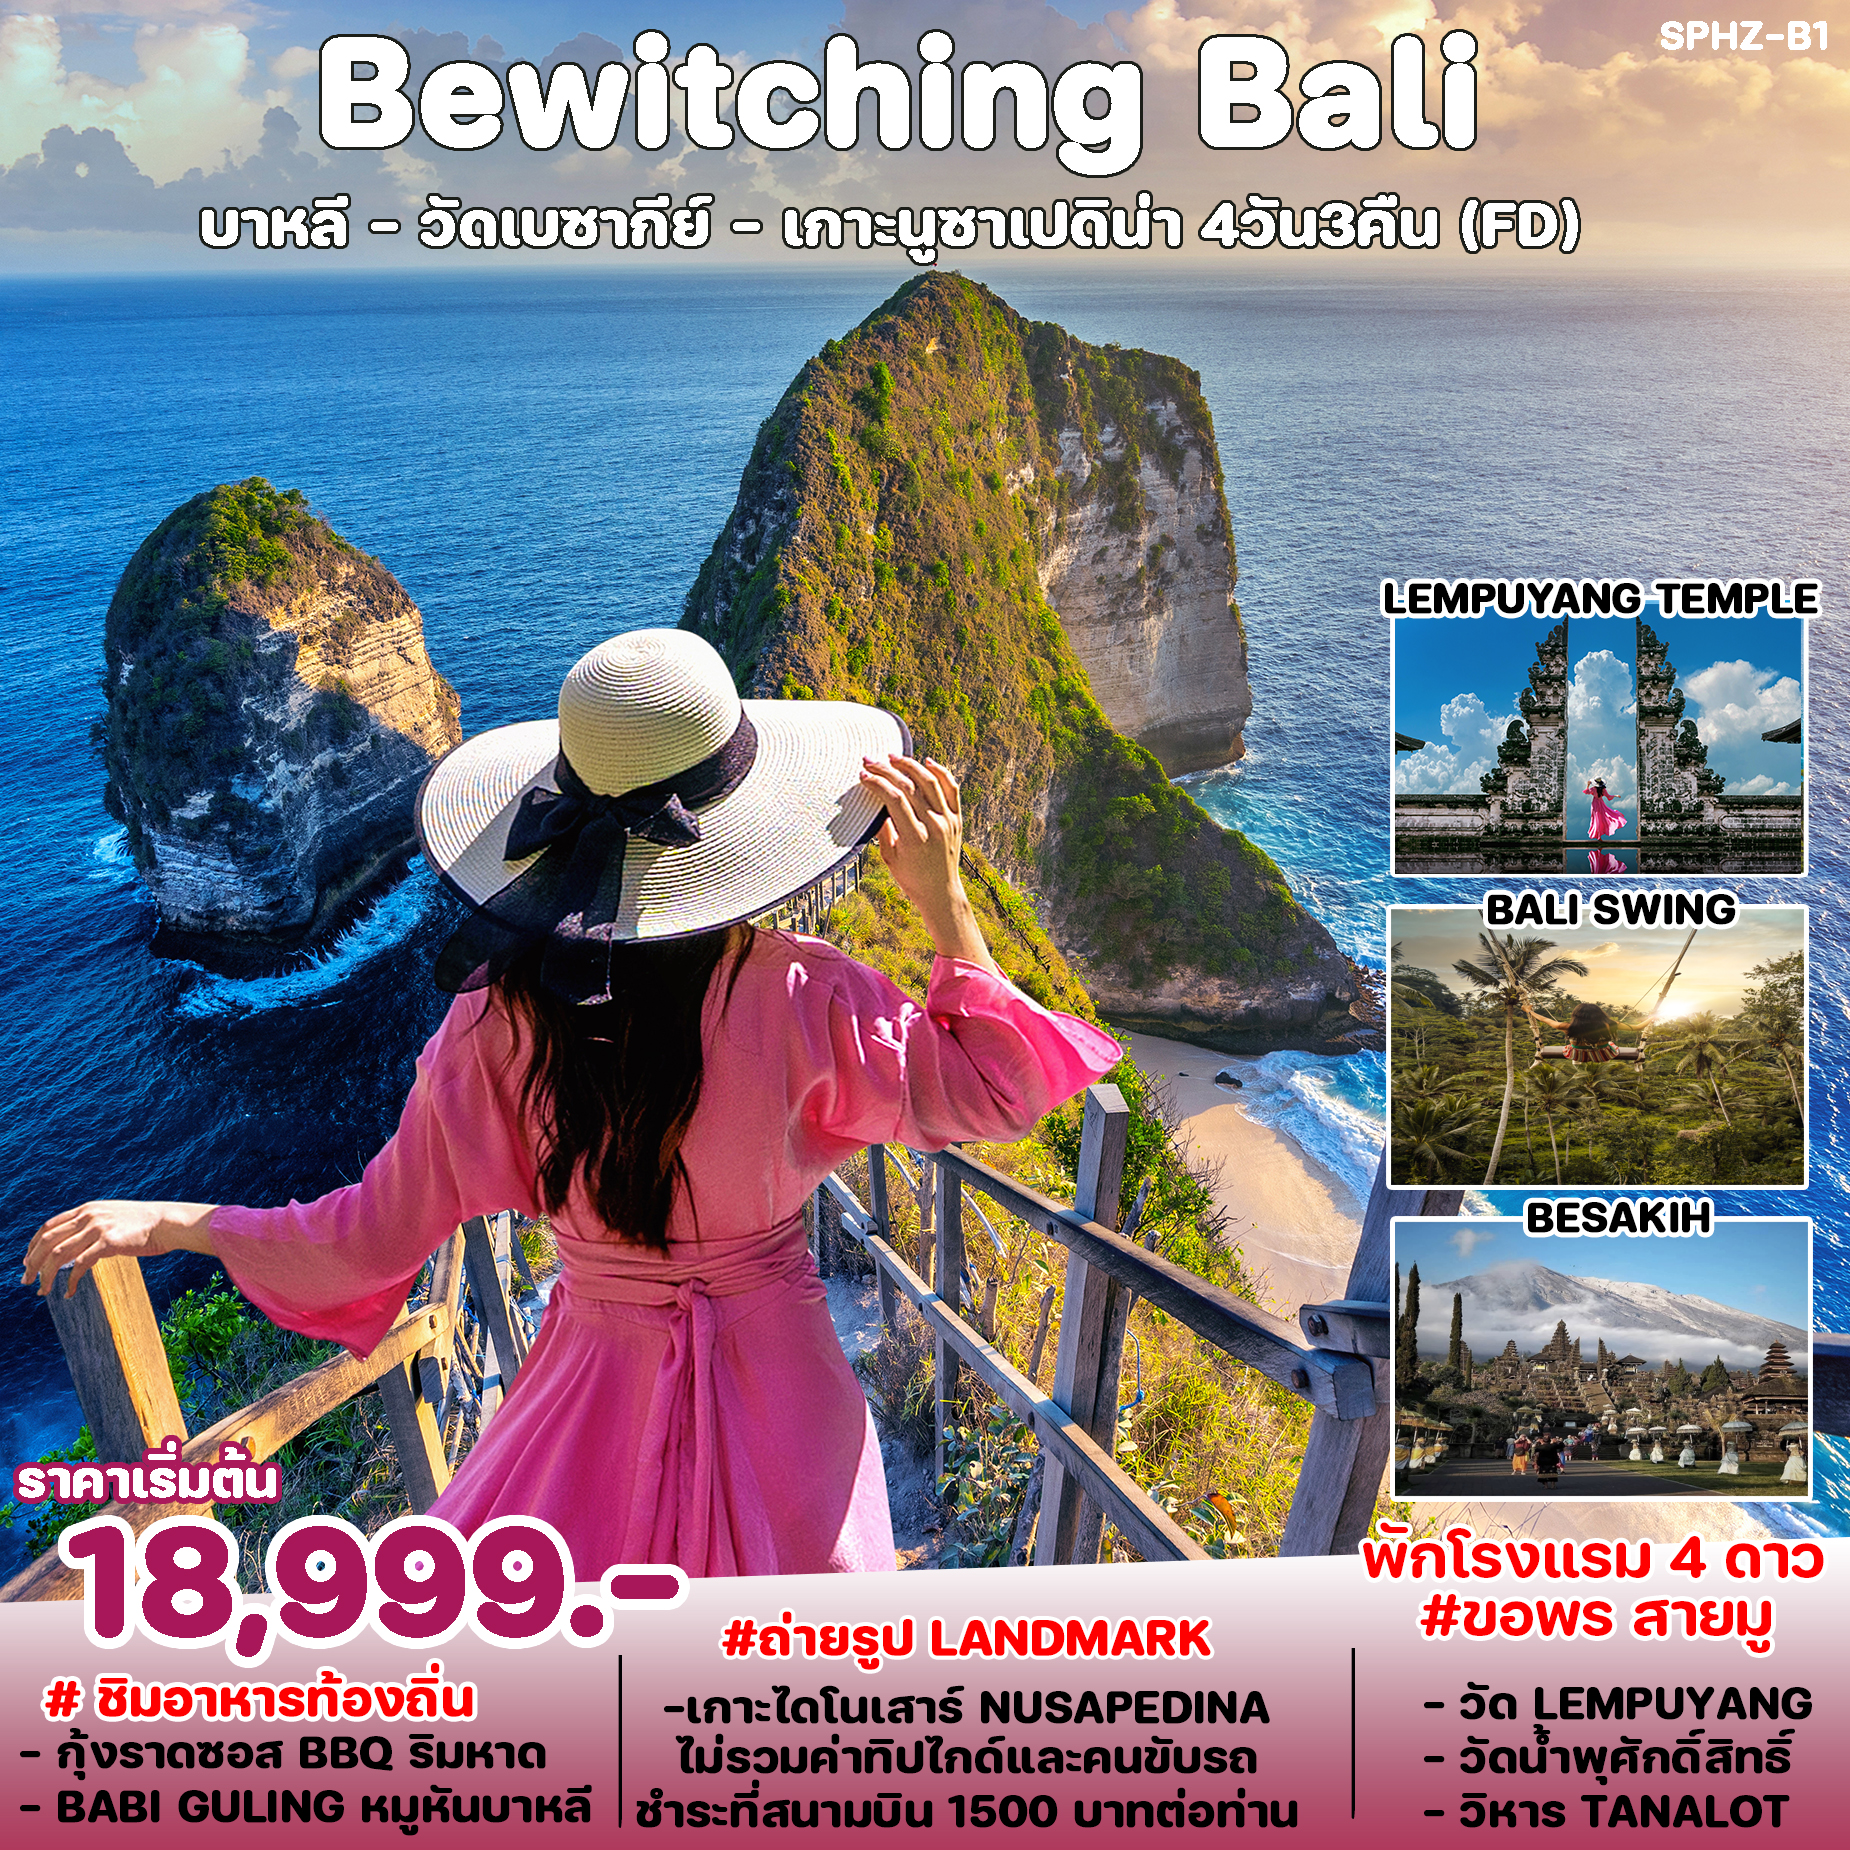 ทัวร์อินโดนีเซีย บาหลี Bewitching Bali 4D3N (FD)